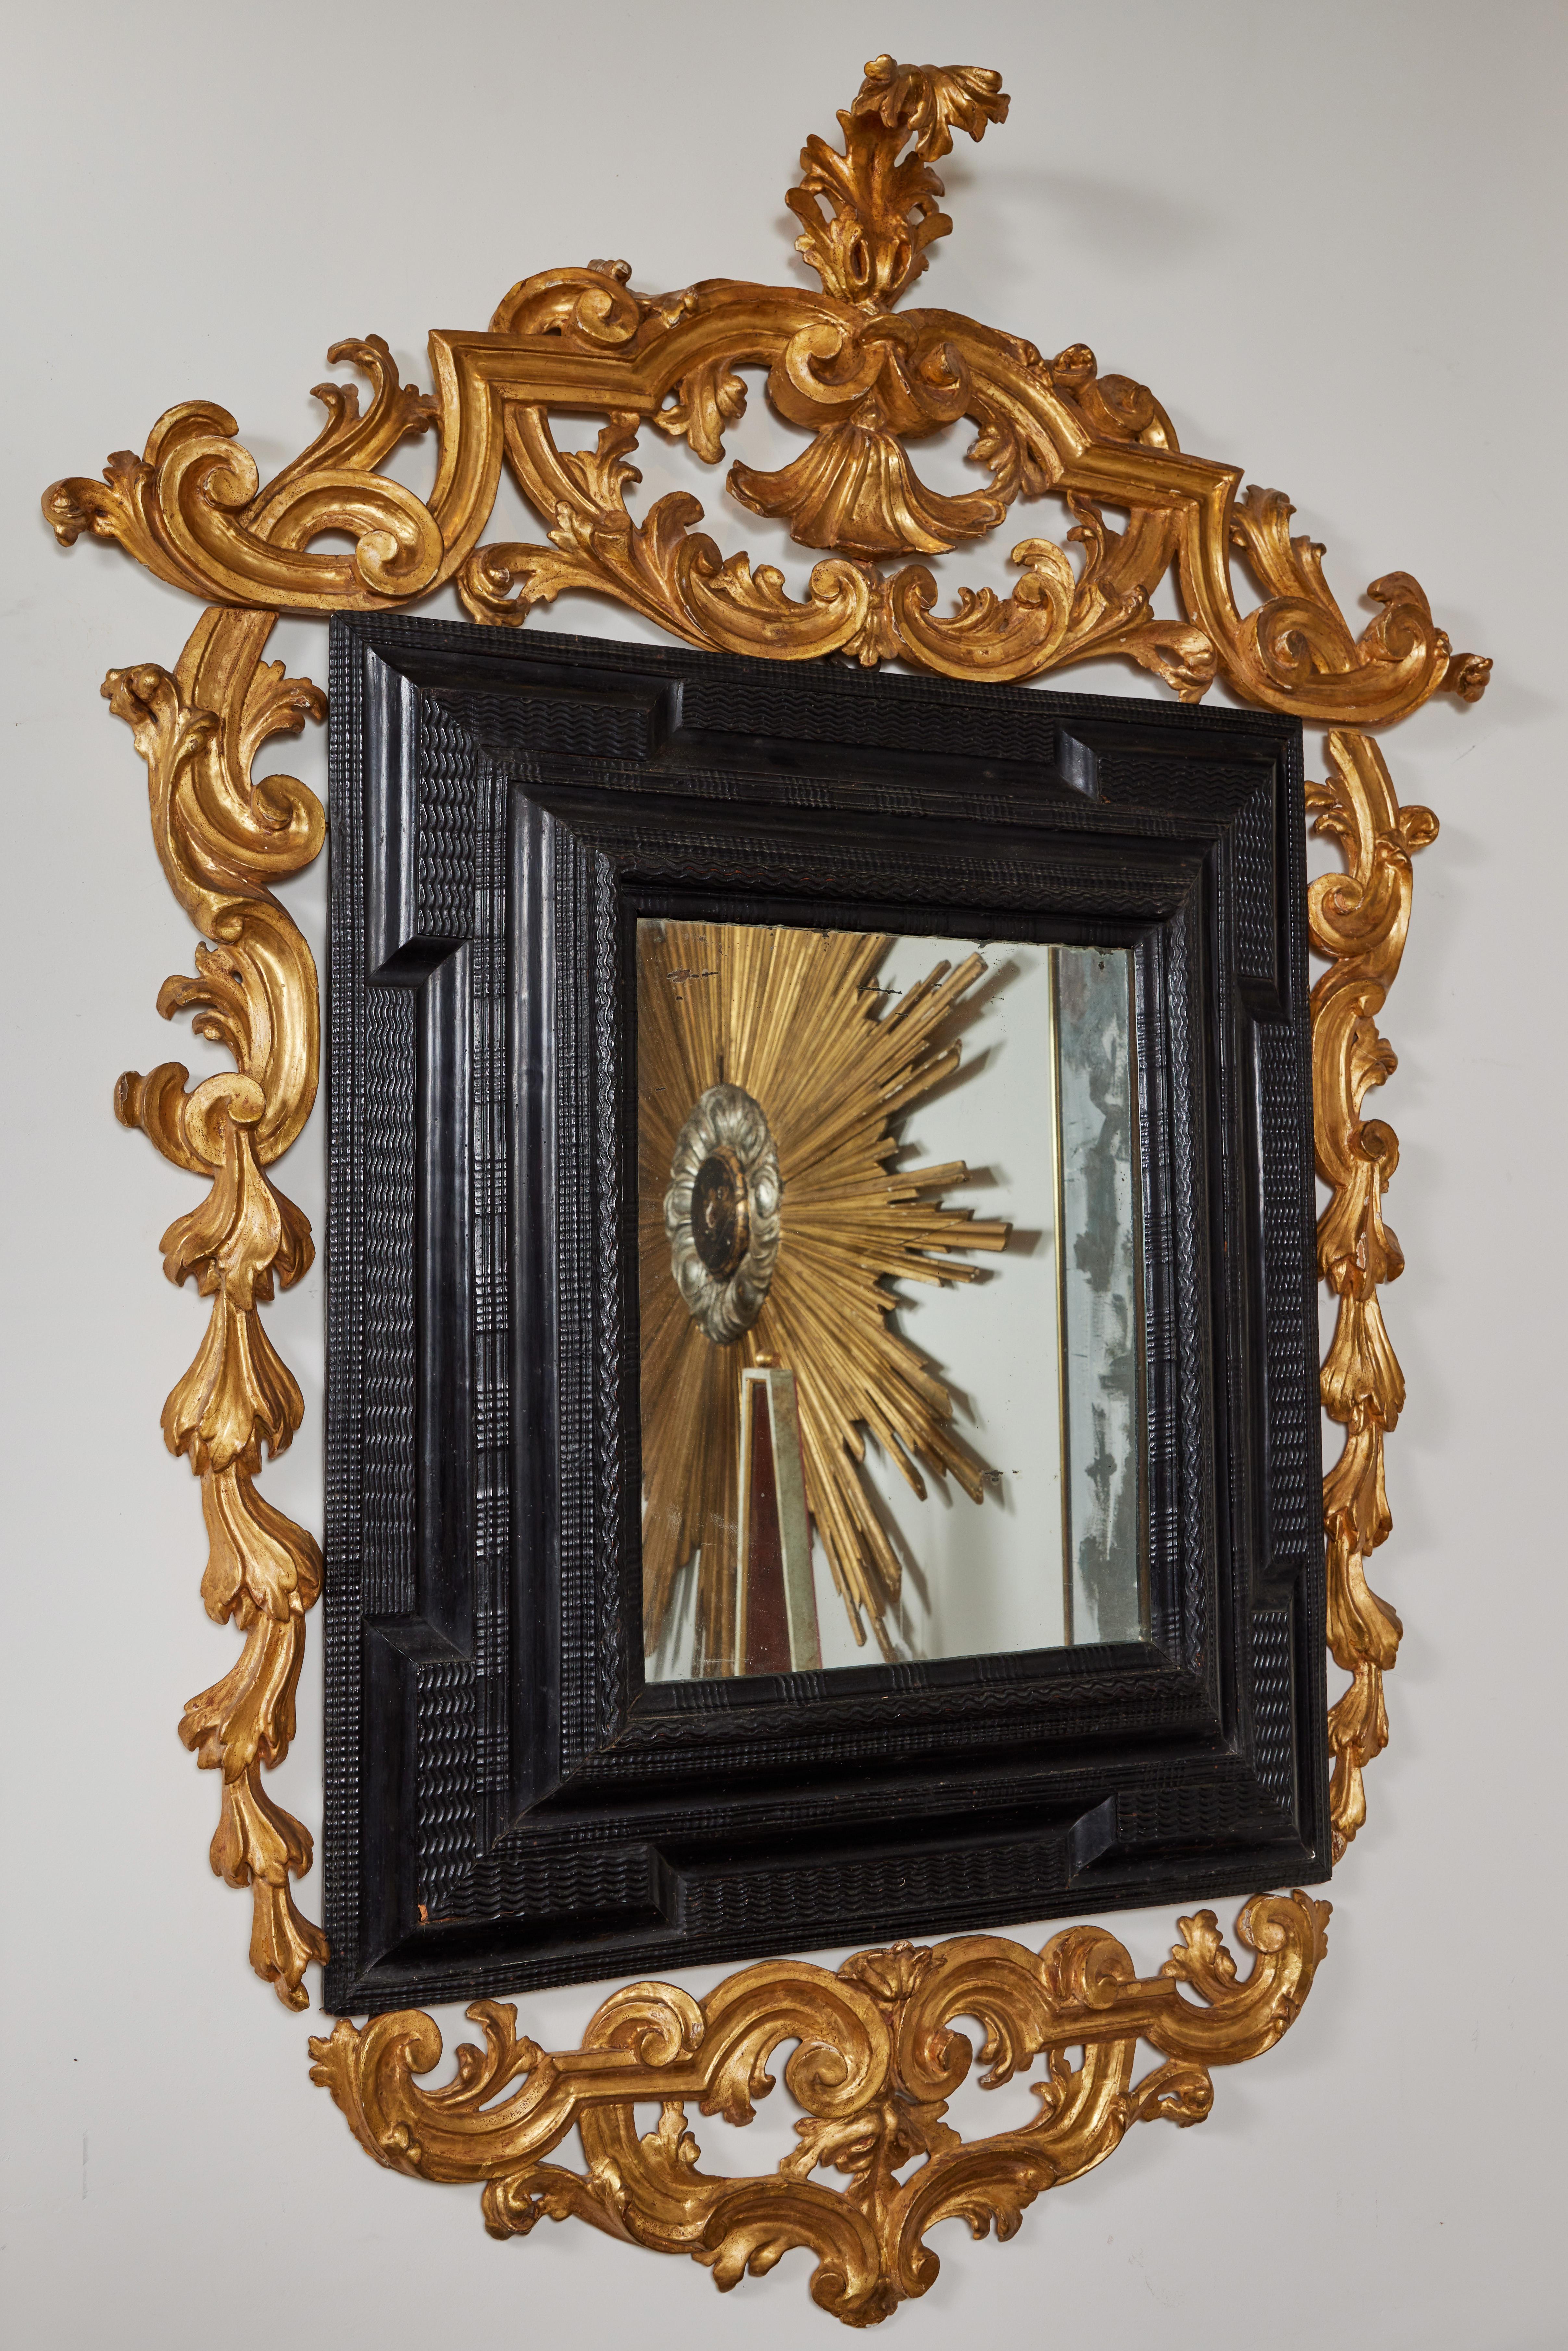 Remarquable miroir de style hollandais, sculpté à la main et ébénisé, orné de formes de vagues en relief. Le tout est entouré d'un cadre d'époque, en bois doré, percé de magnifiques volutes et terminé par une impressionnante couronne ornée d'une